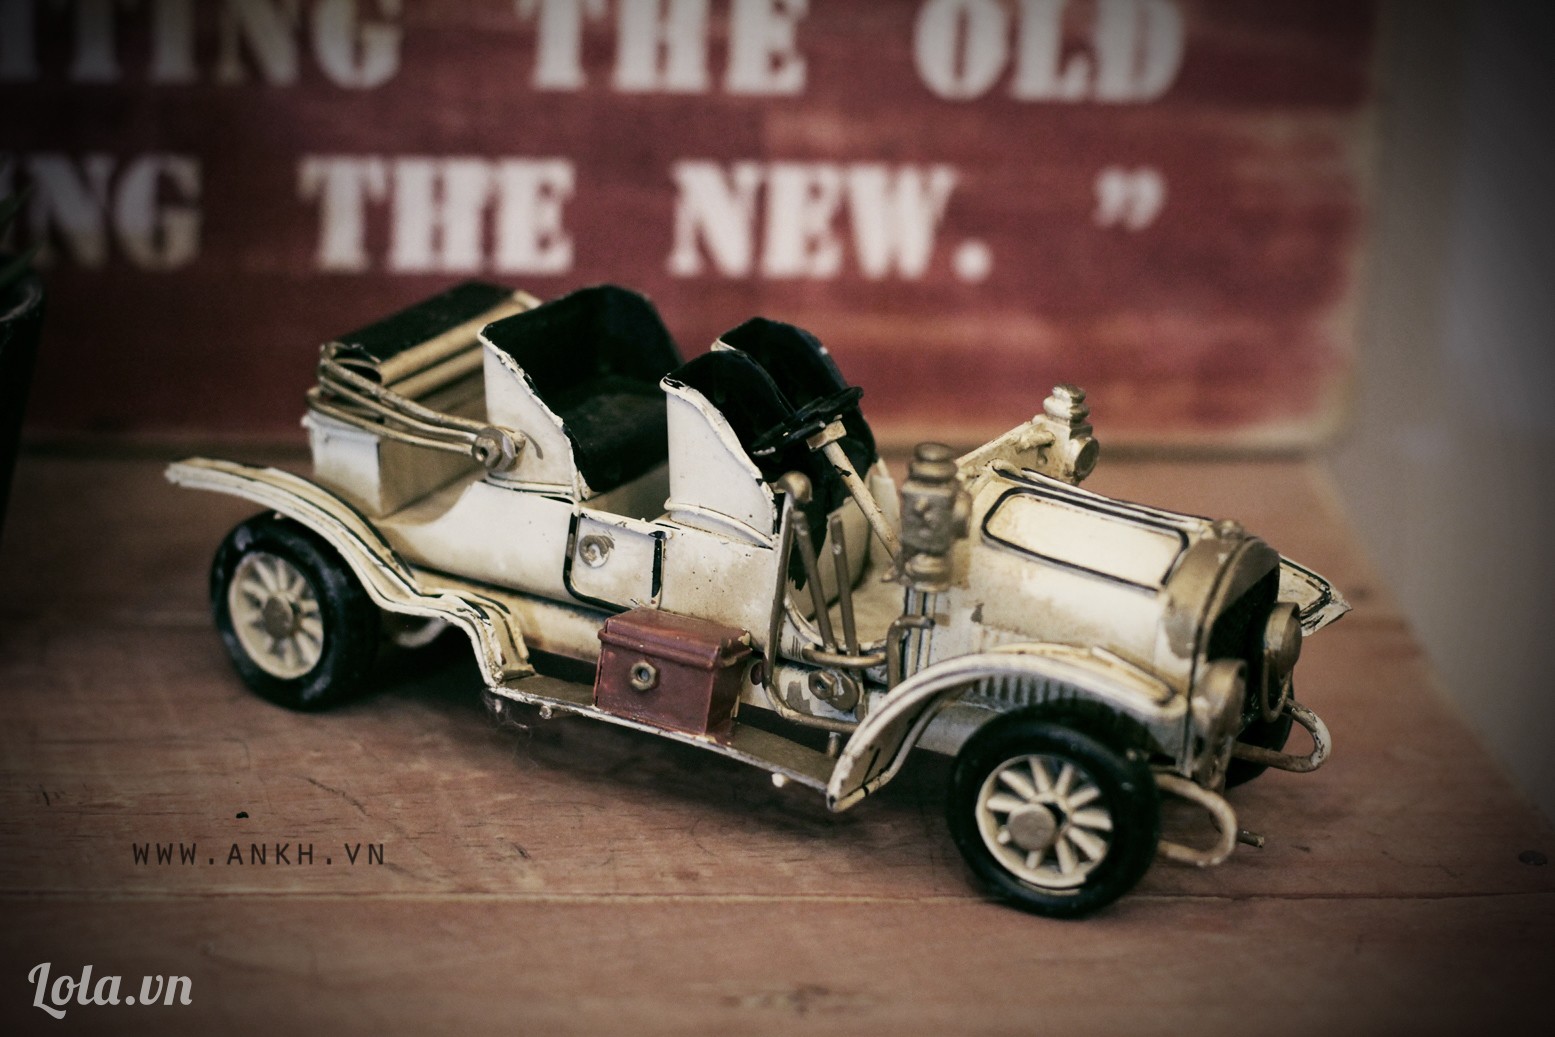 Mô hình xe cổ phù hợp với sếp có sở thích sưu tầm và yêu xe